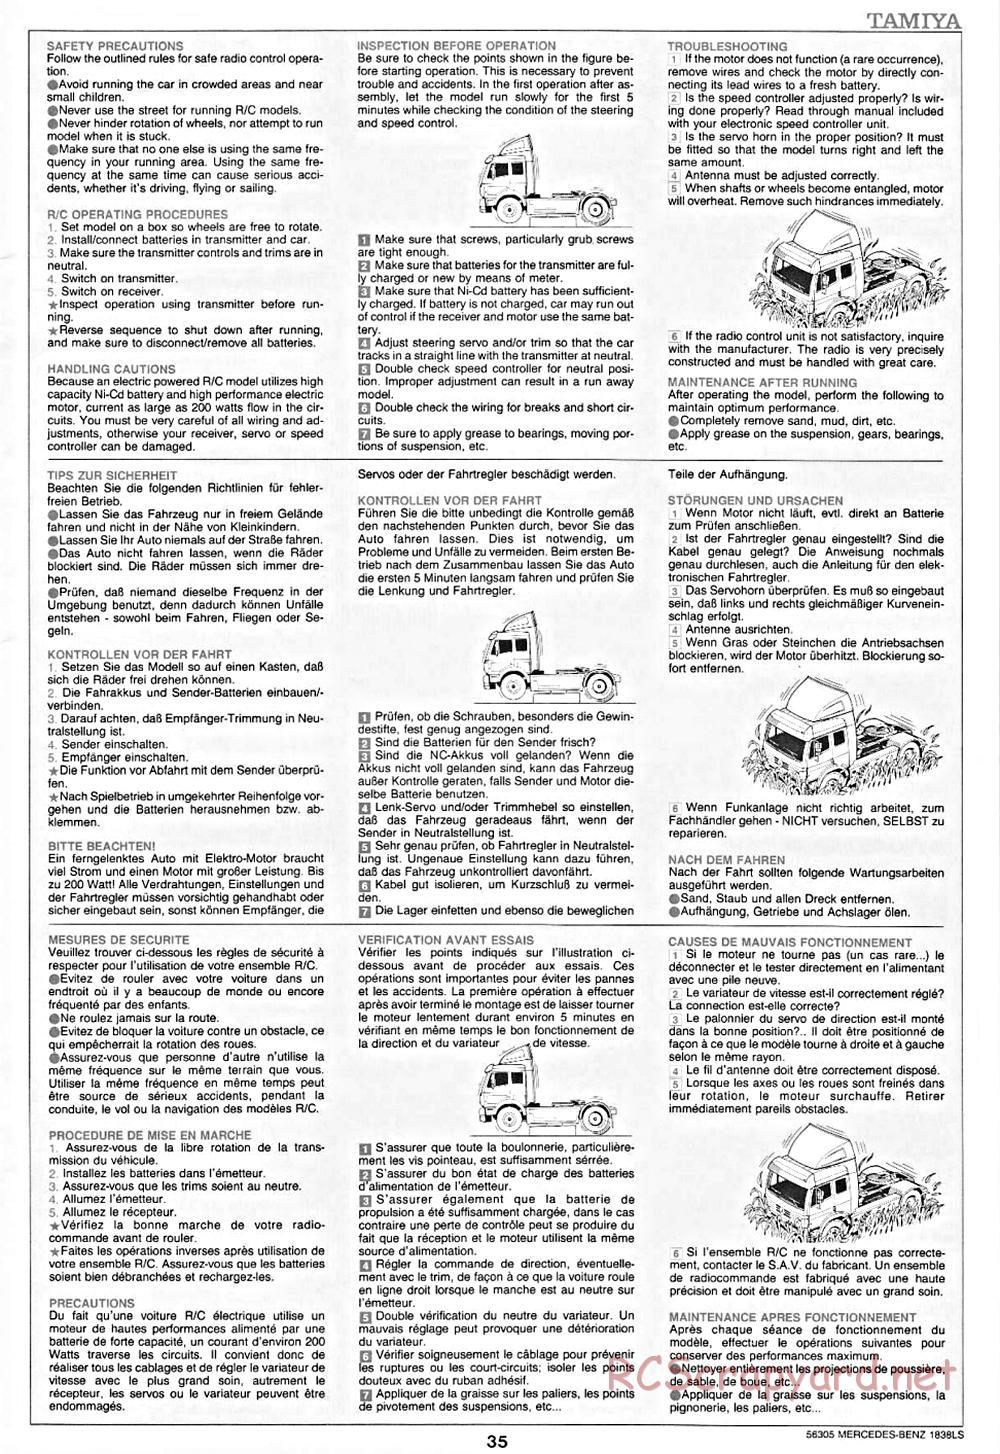 Tamiya - Mercedes-Benz 1838LS - Manual - Page 35